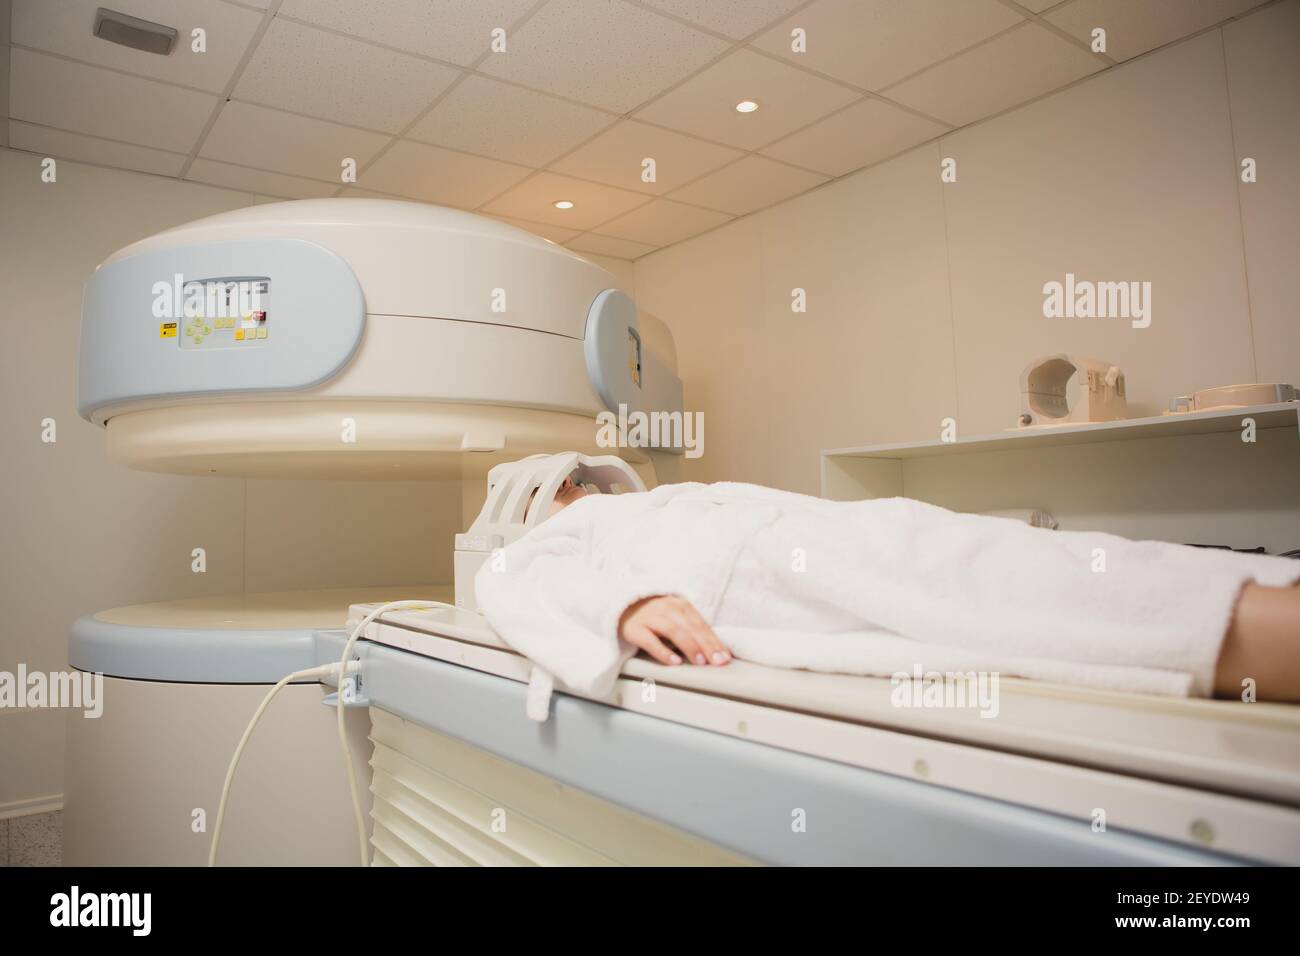 Paciente analizado y diagnosticado en una tomografía computerizada Foto de stock